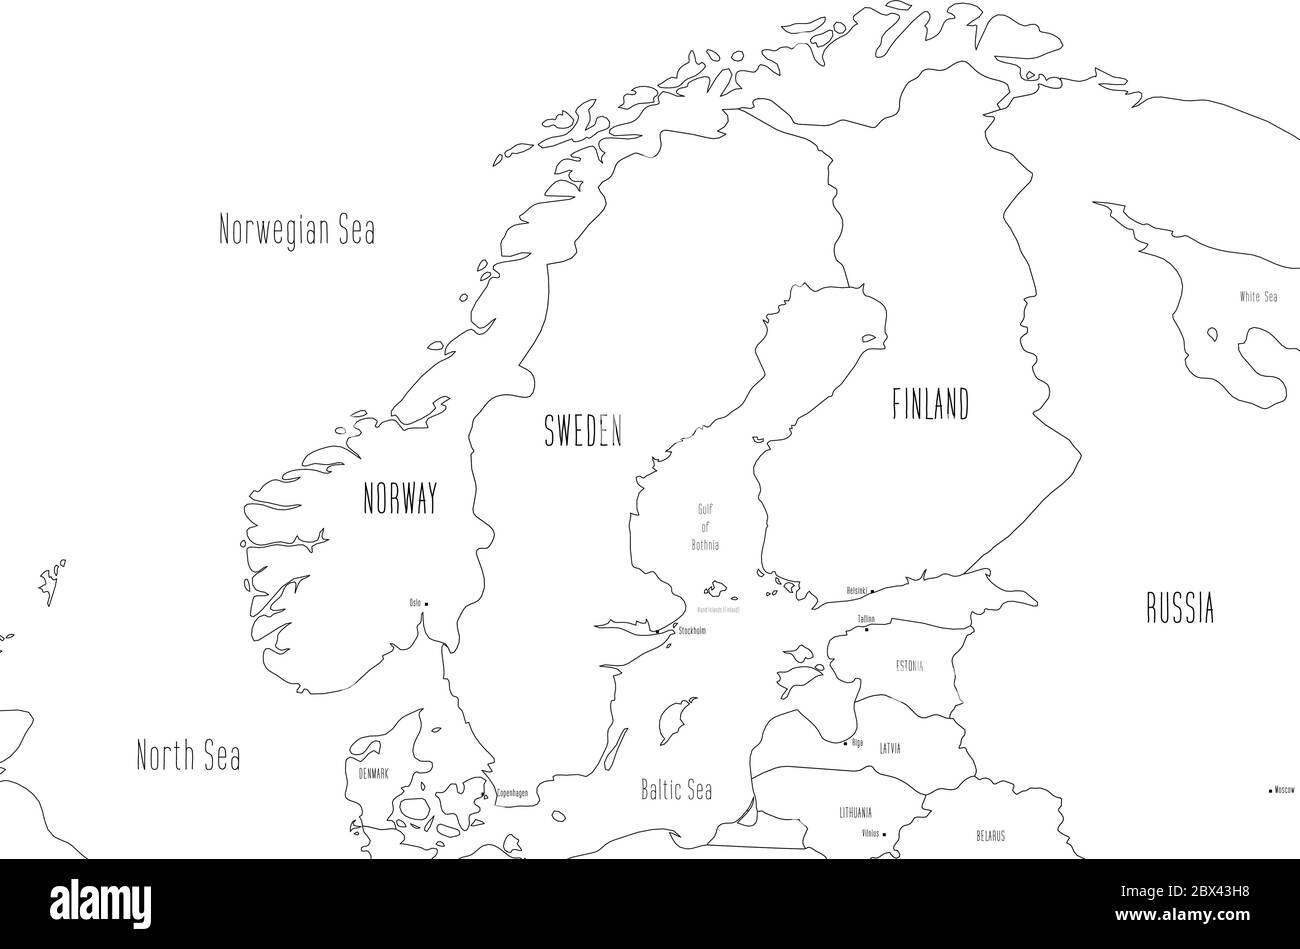 Mappa della Scandinavia. Stile doodle disegnato a mano. Illustrazione vettoriale. Illustrazione Vettoriale